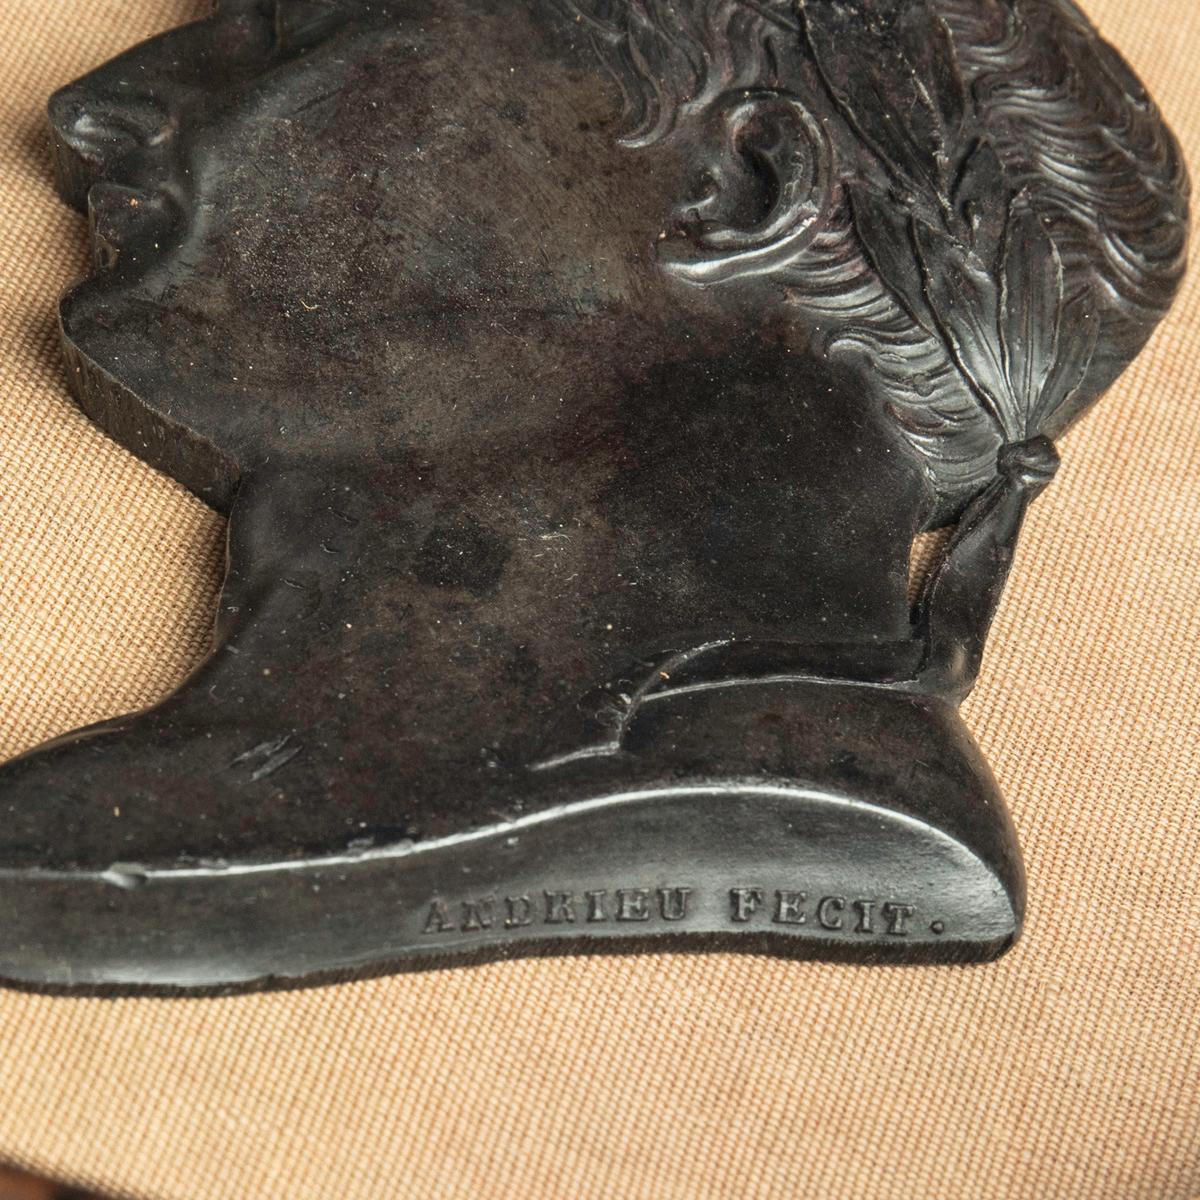 Portrait en bronze de l'empereur Napoléon Bonaparte, par Andrieu, représentant Napoléon tourné vers la droite et portant la guirlande de laurier d'un empereur romain, estampillé Andrieu Fecit (Andrieu l'a fait), dans un cadre ovale.  Le Label en